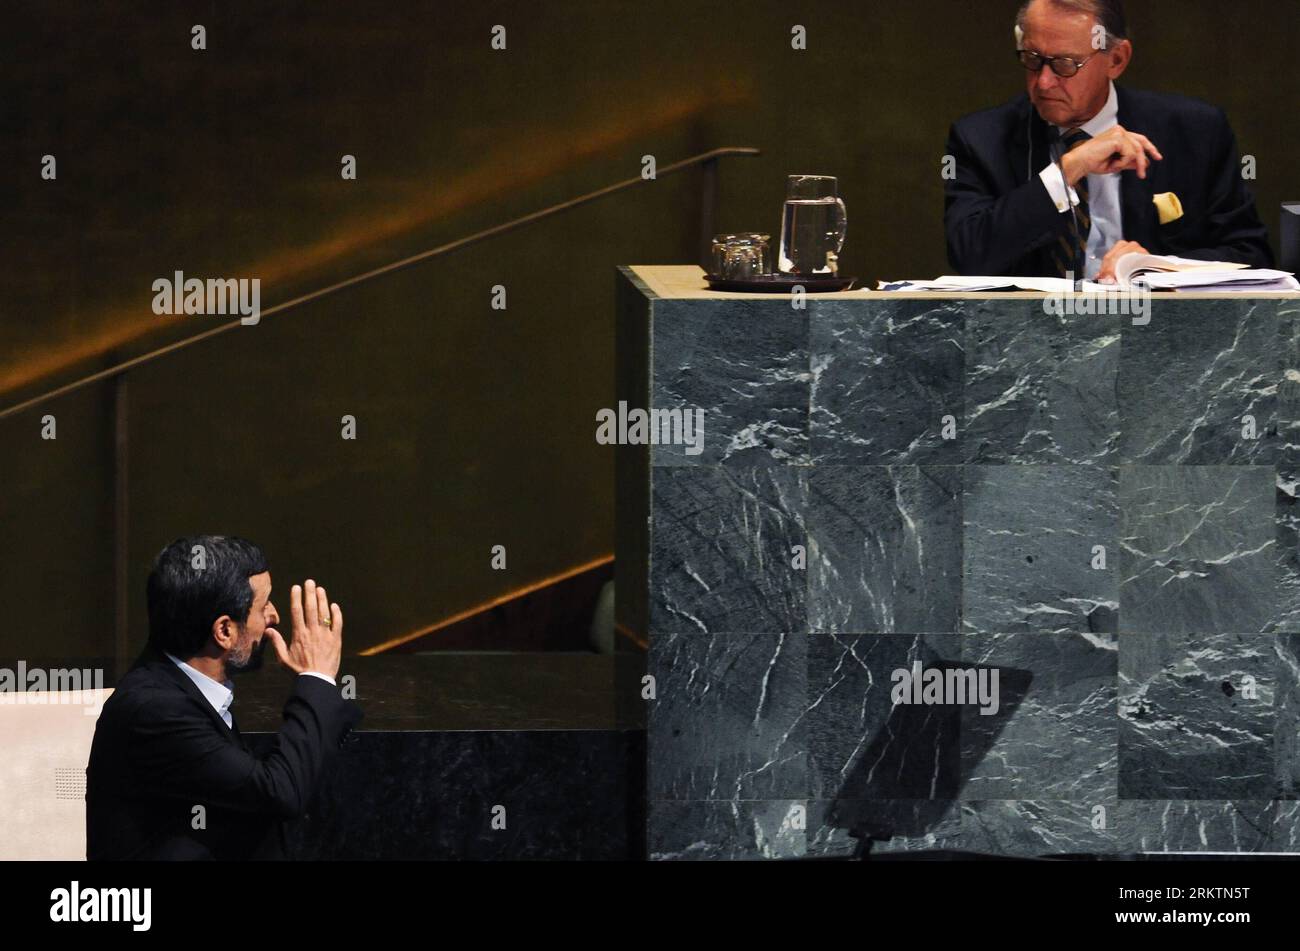 Bildnummer : 58518915 Datum : 26.09.2012 Copyright : imago/Xinhua (120926) -- NEW YORK, 26 septembre 2012 (Xinhua) -- le président iranien Mahmoud Ahmadinejad(L) fait des gestes en marchant sur la tribune avant de prendre la parole lors du débat général de la 67e session de l’Assemblée générale des Nations Unies au siège de l’ONU à New York, aux États-Unis, le 26 septembre 2012. Ahmadinejad a accusé mercredi certaines puissances hégémoniques d’intimider son pays, citant des menaces militaires d’Israël. (Xinhua/Shen Hong) ONU-NEW YORK-ASSEMBLÉE GÉNÉRALE-DÉBAT GÉNÉRAL-IRAN PUBLICATIONxNOTxINxCHN People Politik UNO Generalversammlung x0x x Banque D'Images